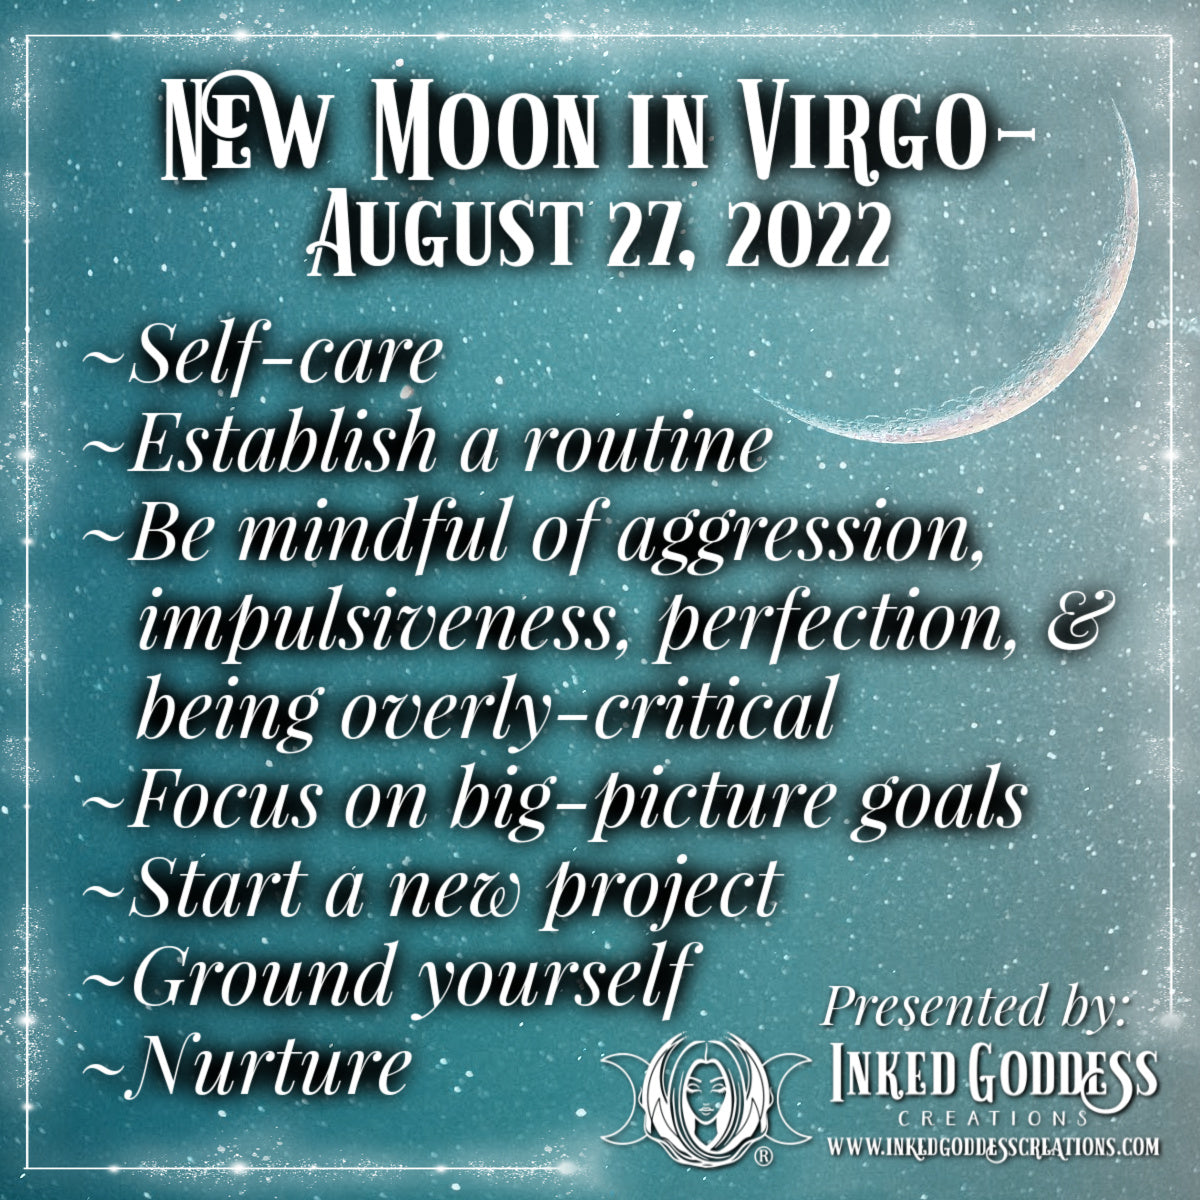 New Moon in Virgo- August 27, 2022